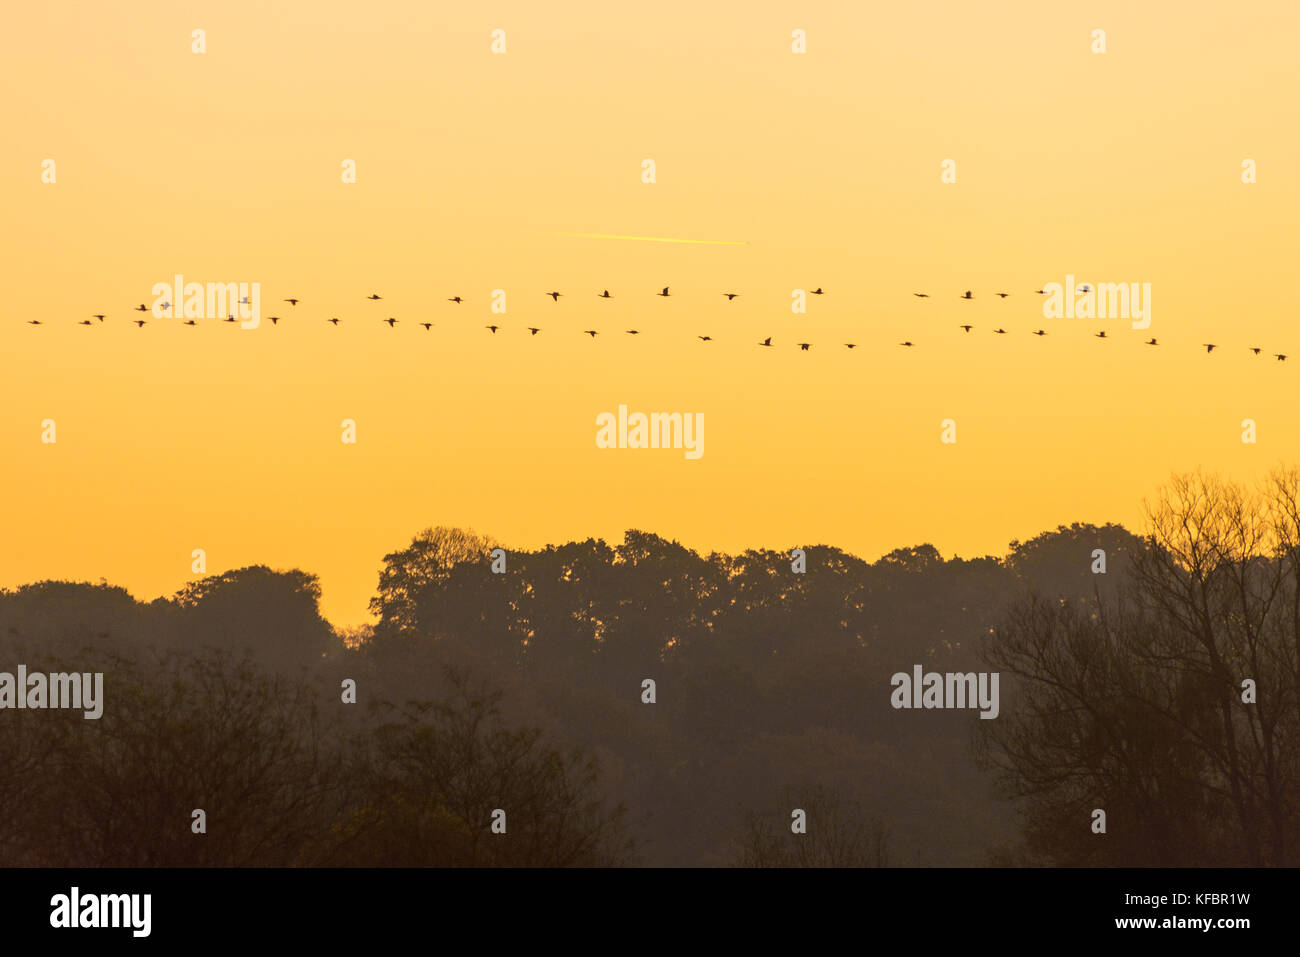 Gänse fliegen in V-Formation über Bäumen in einem orangen Himmel an einem Herbstmorgen Stockfoto